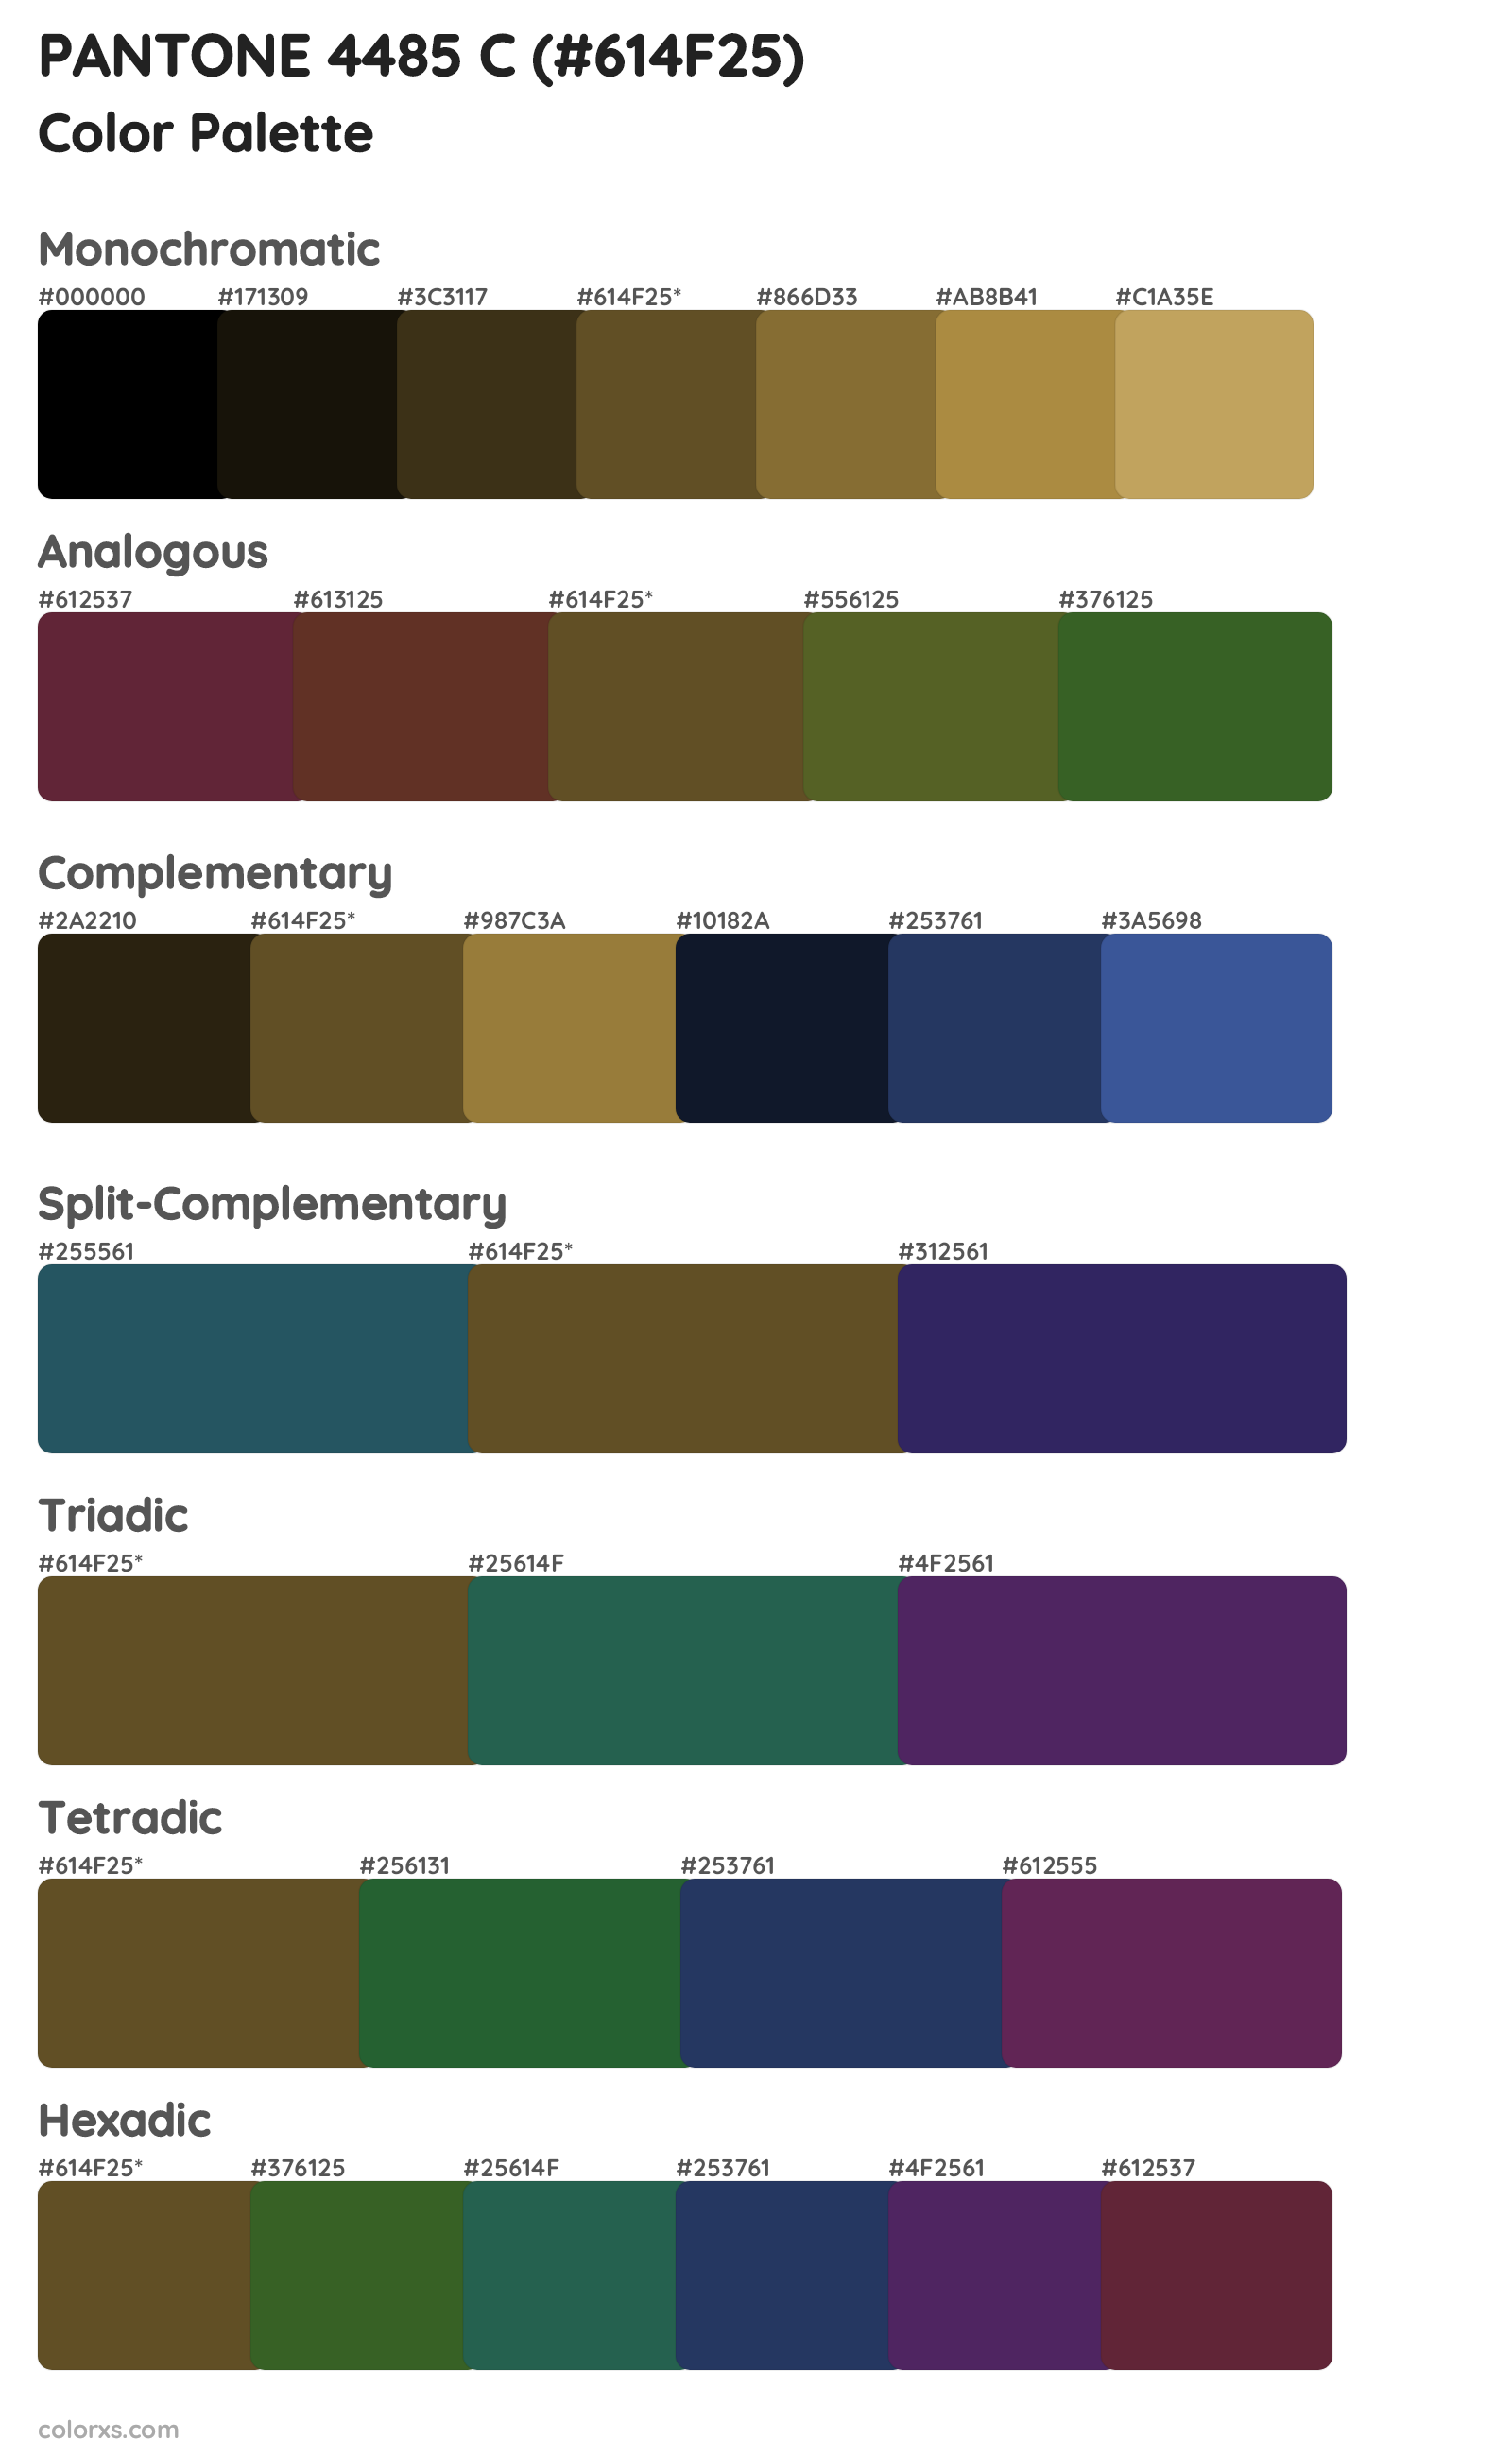 PANTONE 4485 C Color Scheme Palettes